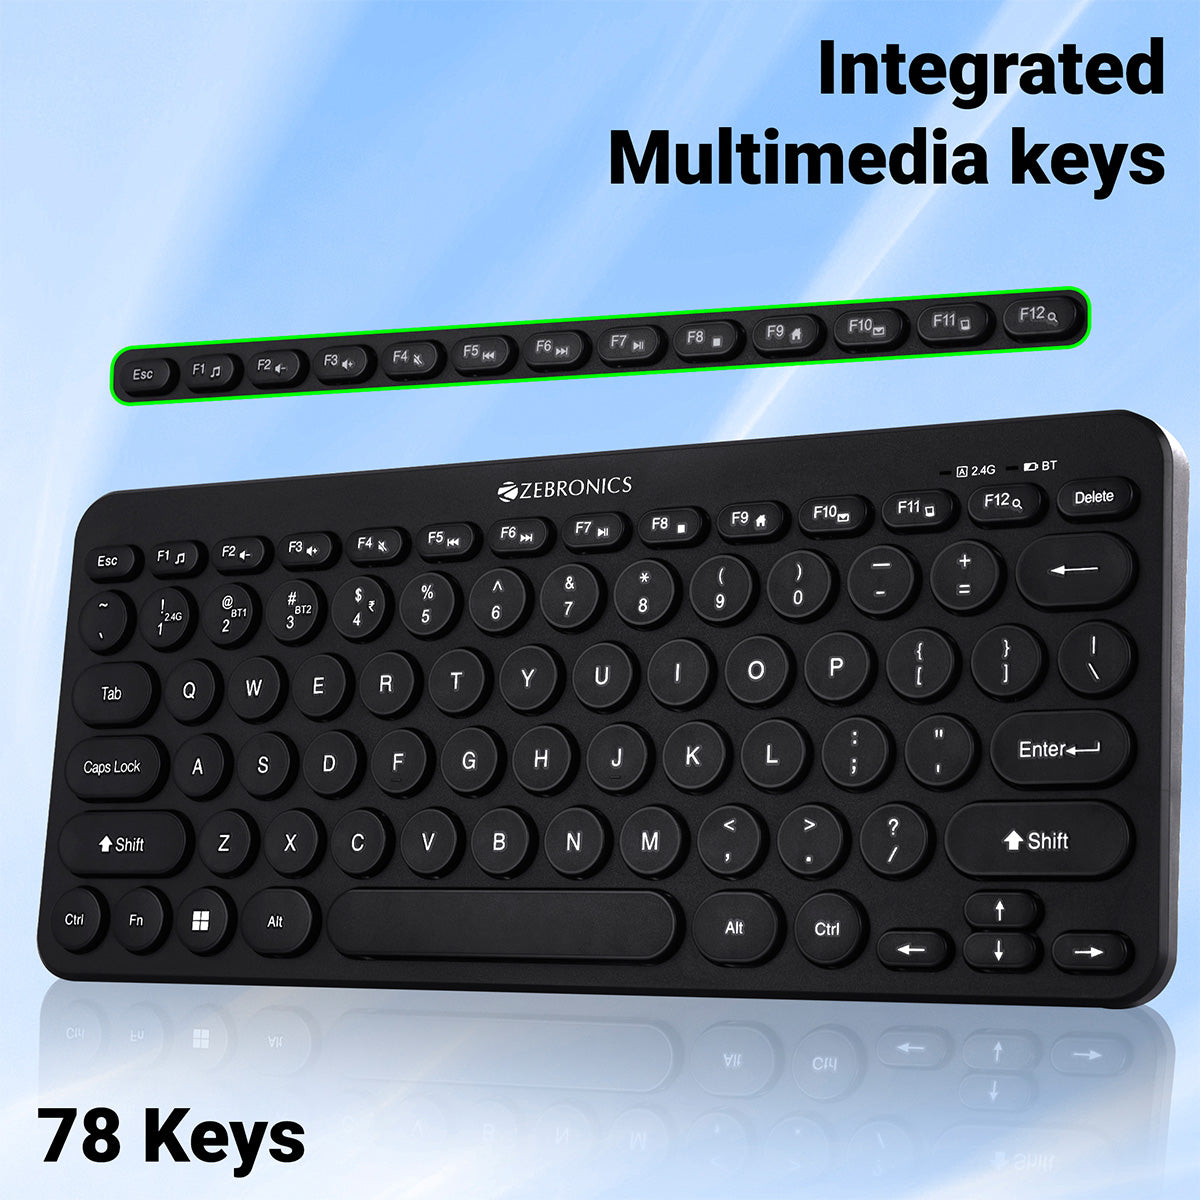 ZEB-K4000MW - Wireless Keyboard - Zebronics